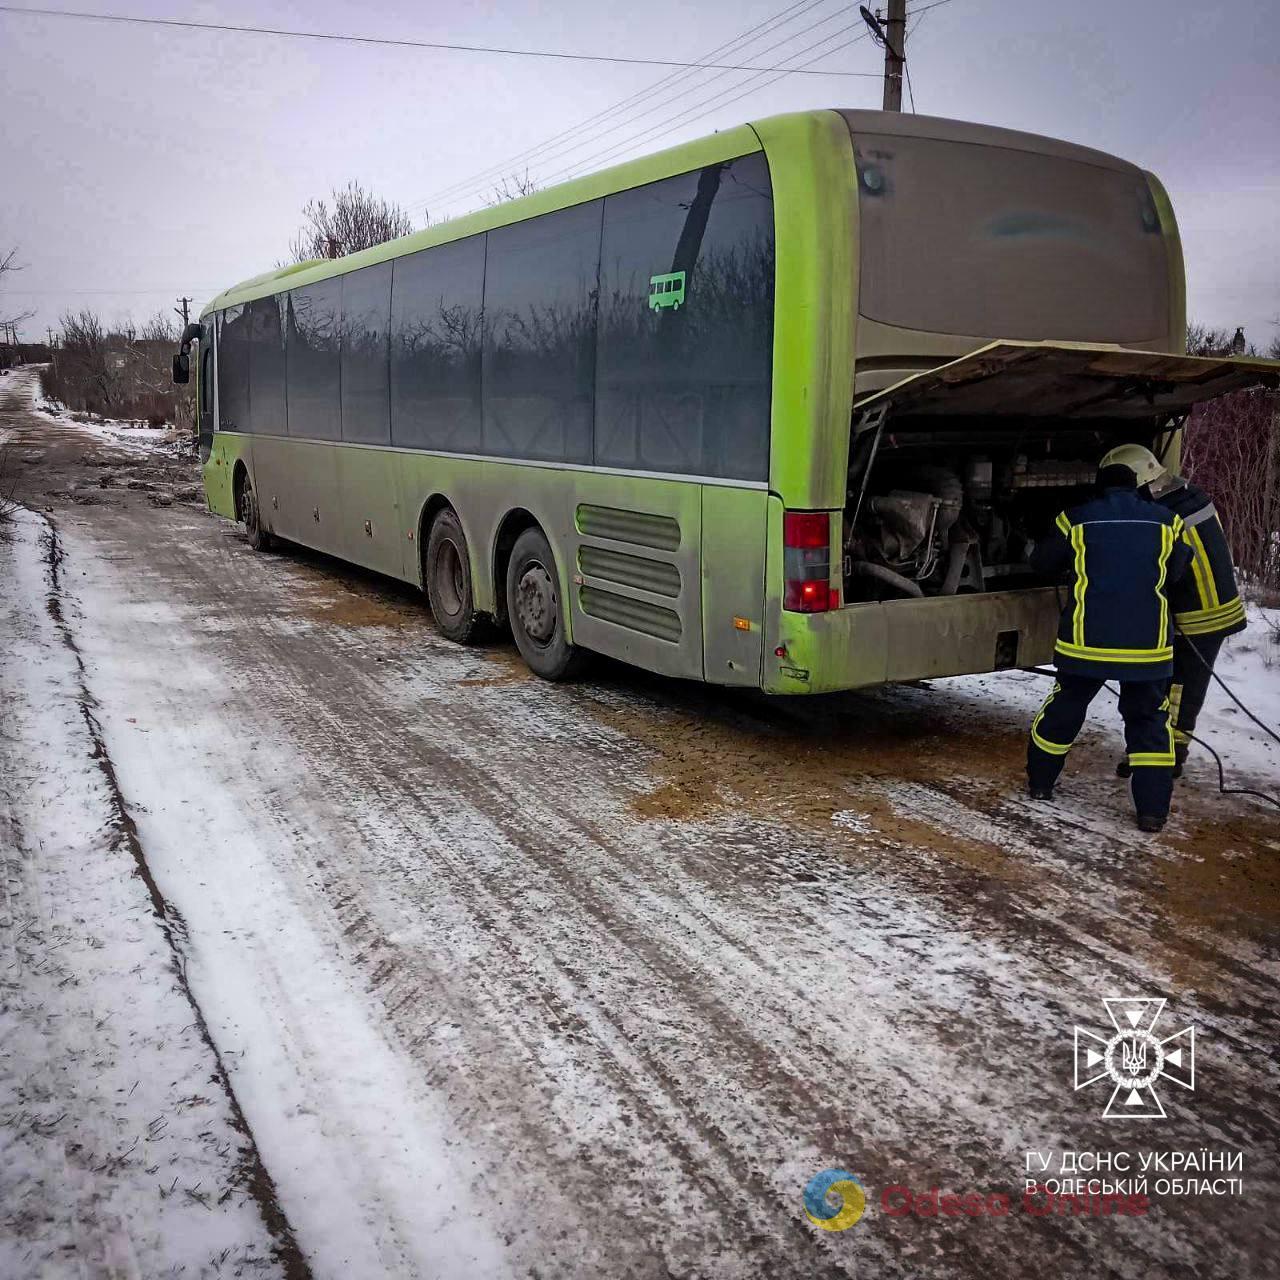 В Одесской области спасатели вытащили автобус со скользкого участка дороги (фото)